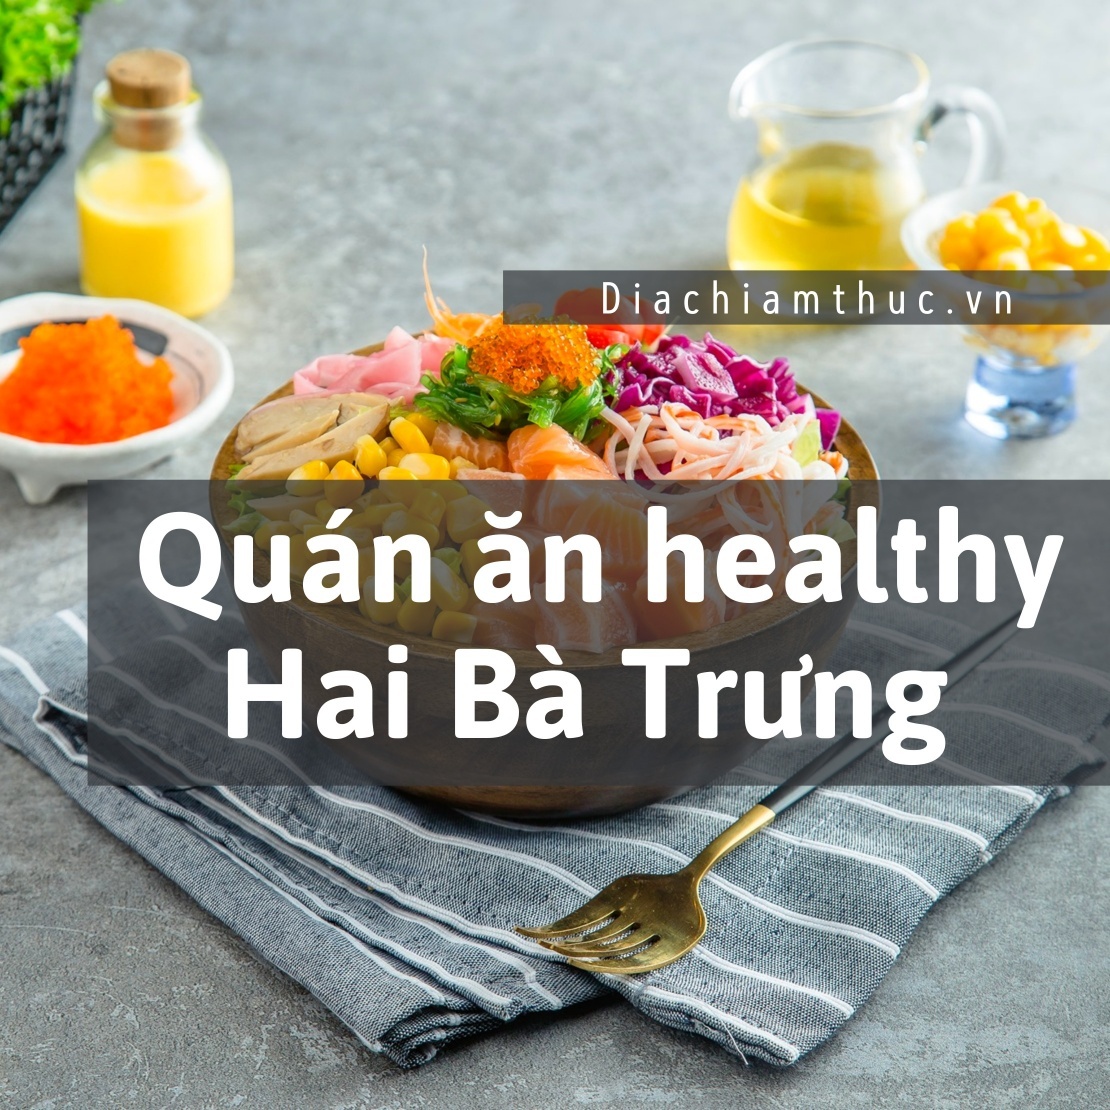 Quán ăn healthy quận Hai Bà Trưng